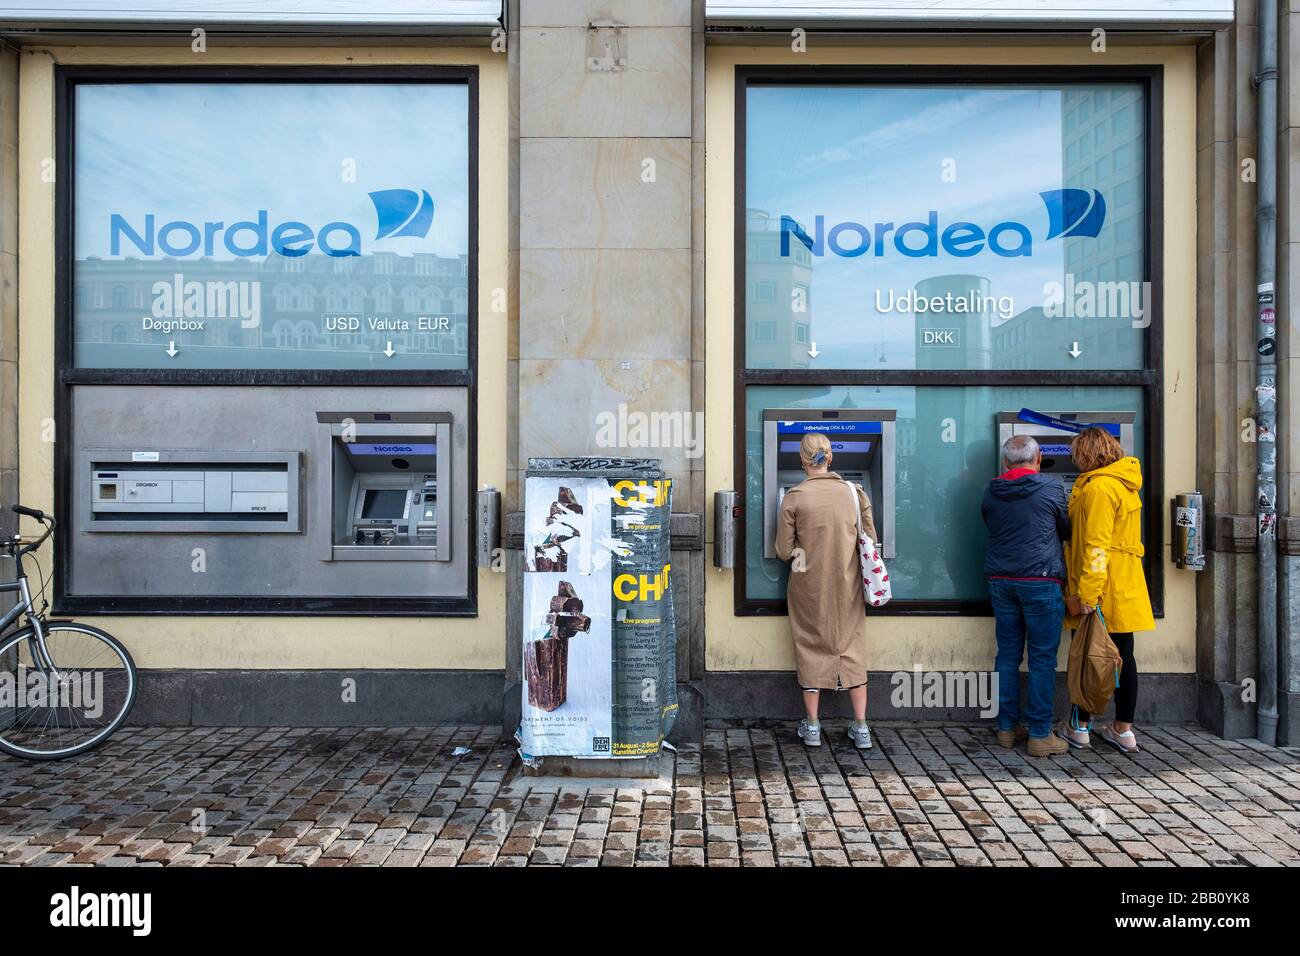 Les personnes utilisant des distributeurs automatiques bancaires Nordea Bank à Copenhague, au Danemark, en Europe Banque D'Images